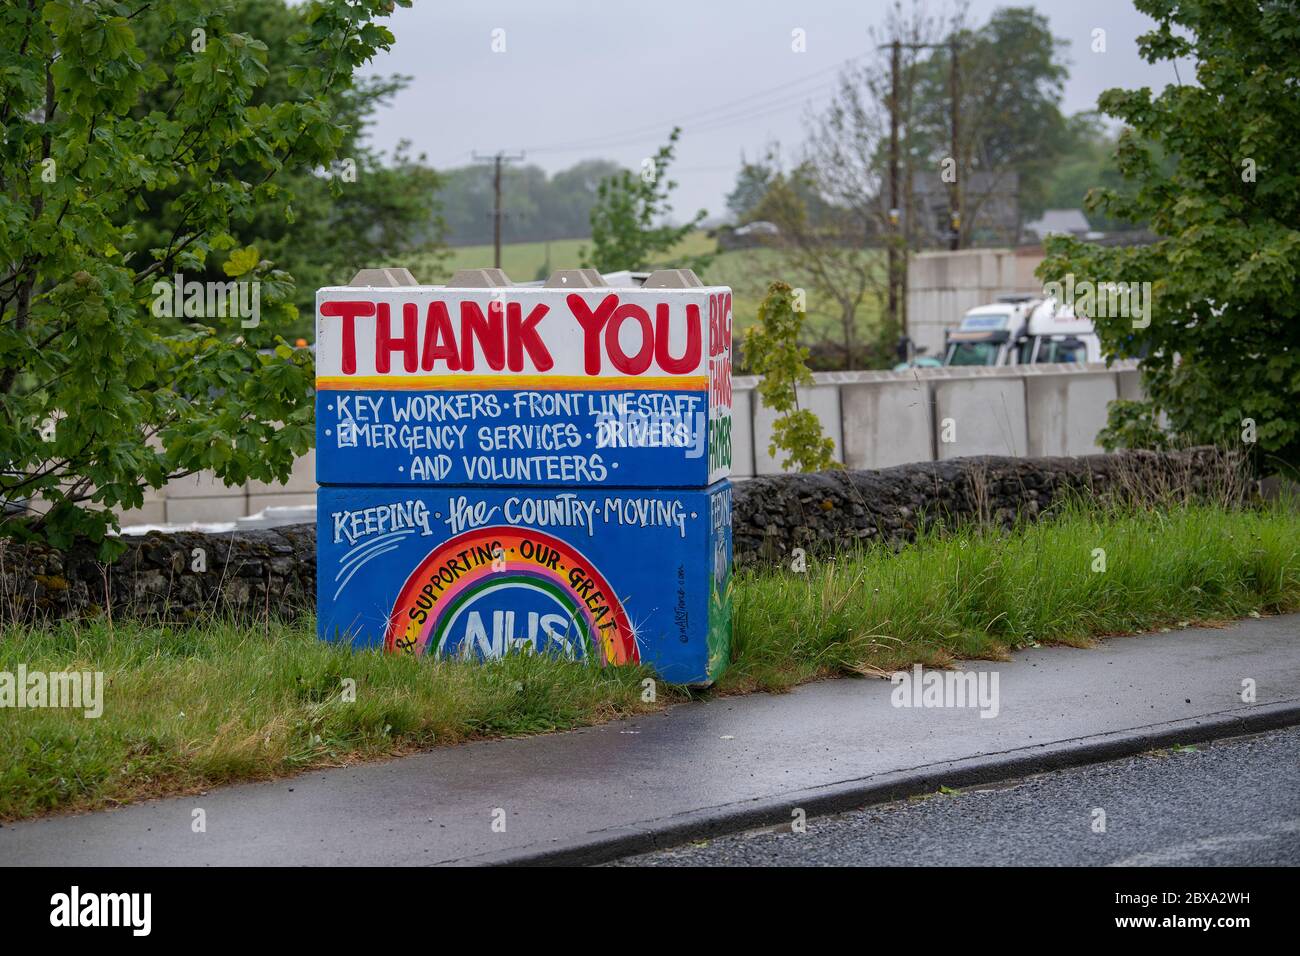 Gemalte Botschaft auf Betonblöcken, die den Schlüsselarbeitern während der Corona Covid-19-Pandemie in Großbritannien danken. North Yorkshire. Stockfoto